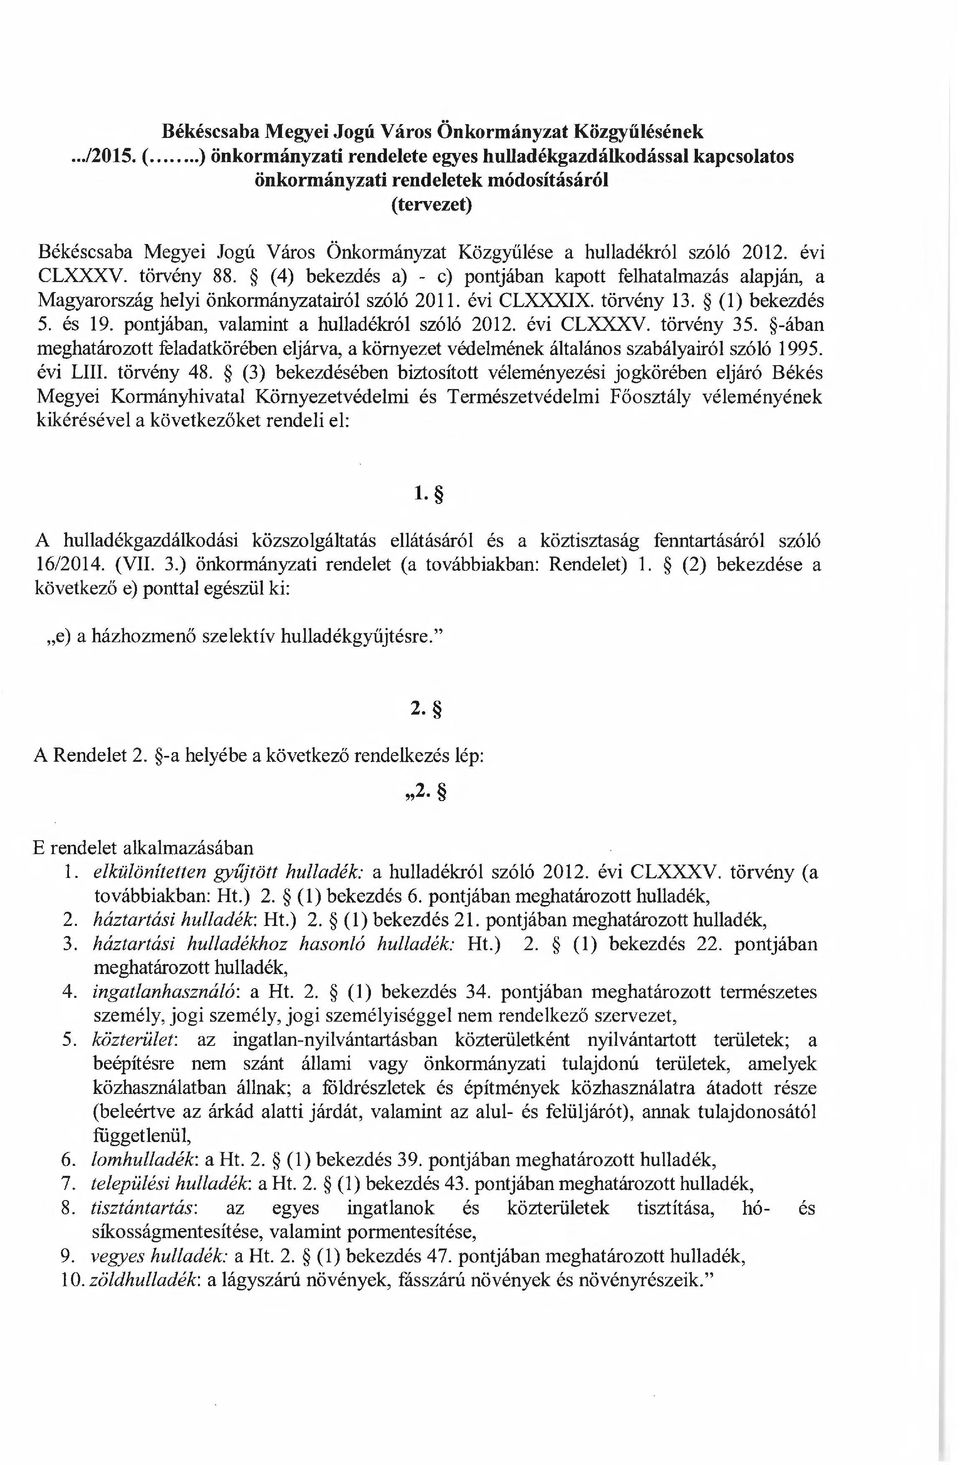 évi CLXXXV. törvény 88. (4) bekezdés a) - e) pontjában kapott felhatalmazás alapján, a Magyarország helyi önkormányzatairól szóló 2011. évi CLXXXIX. törvény 13. (1) bekezdés 5. és 19.